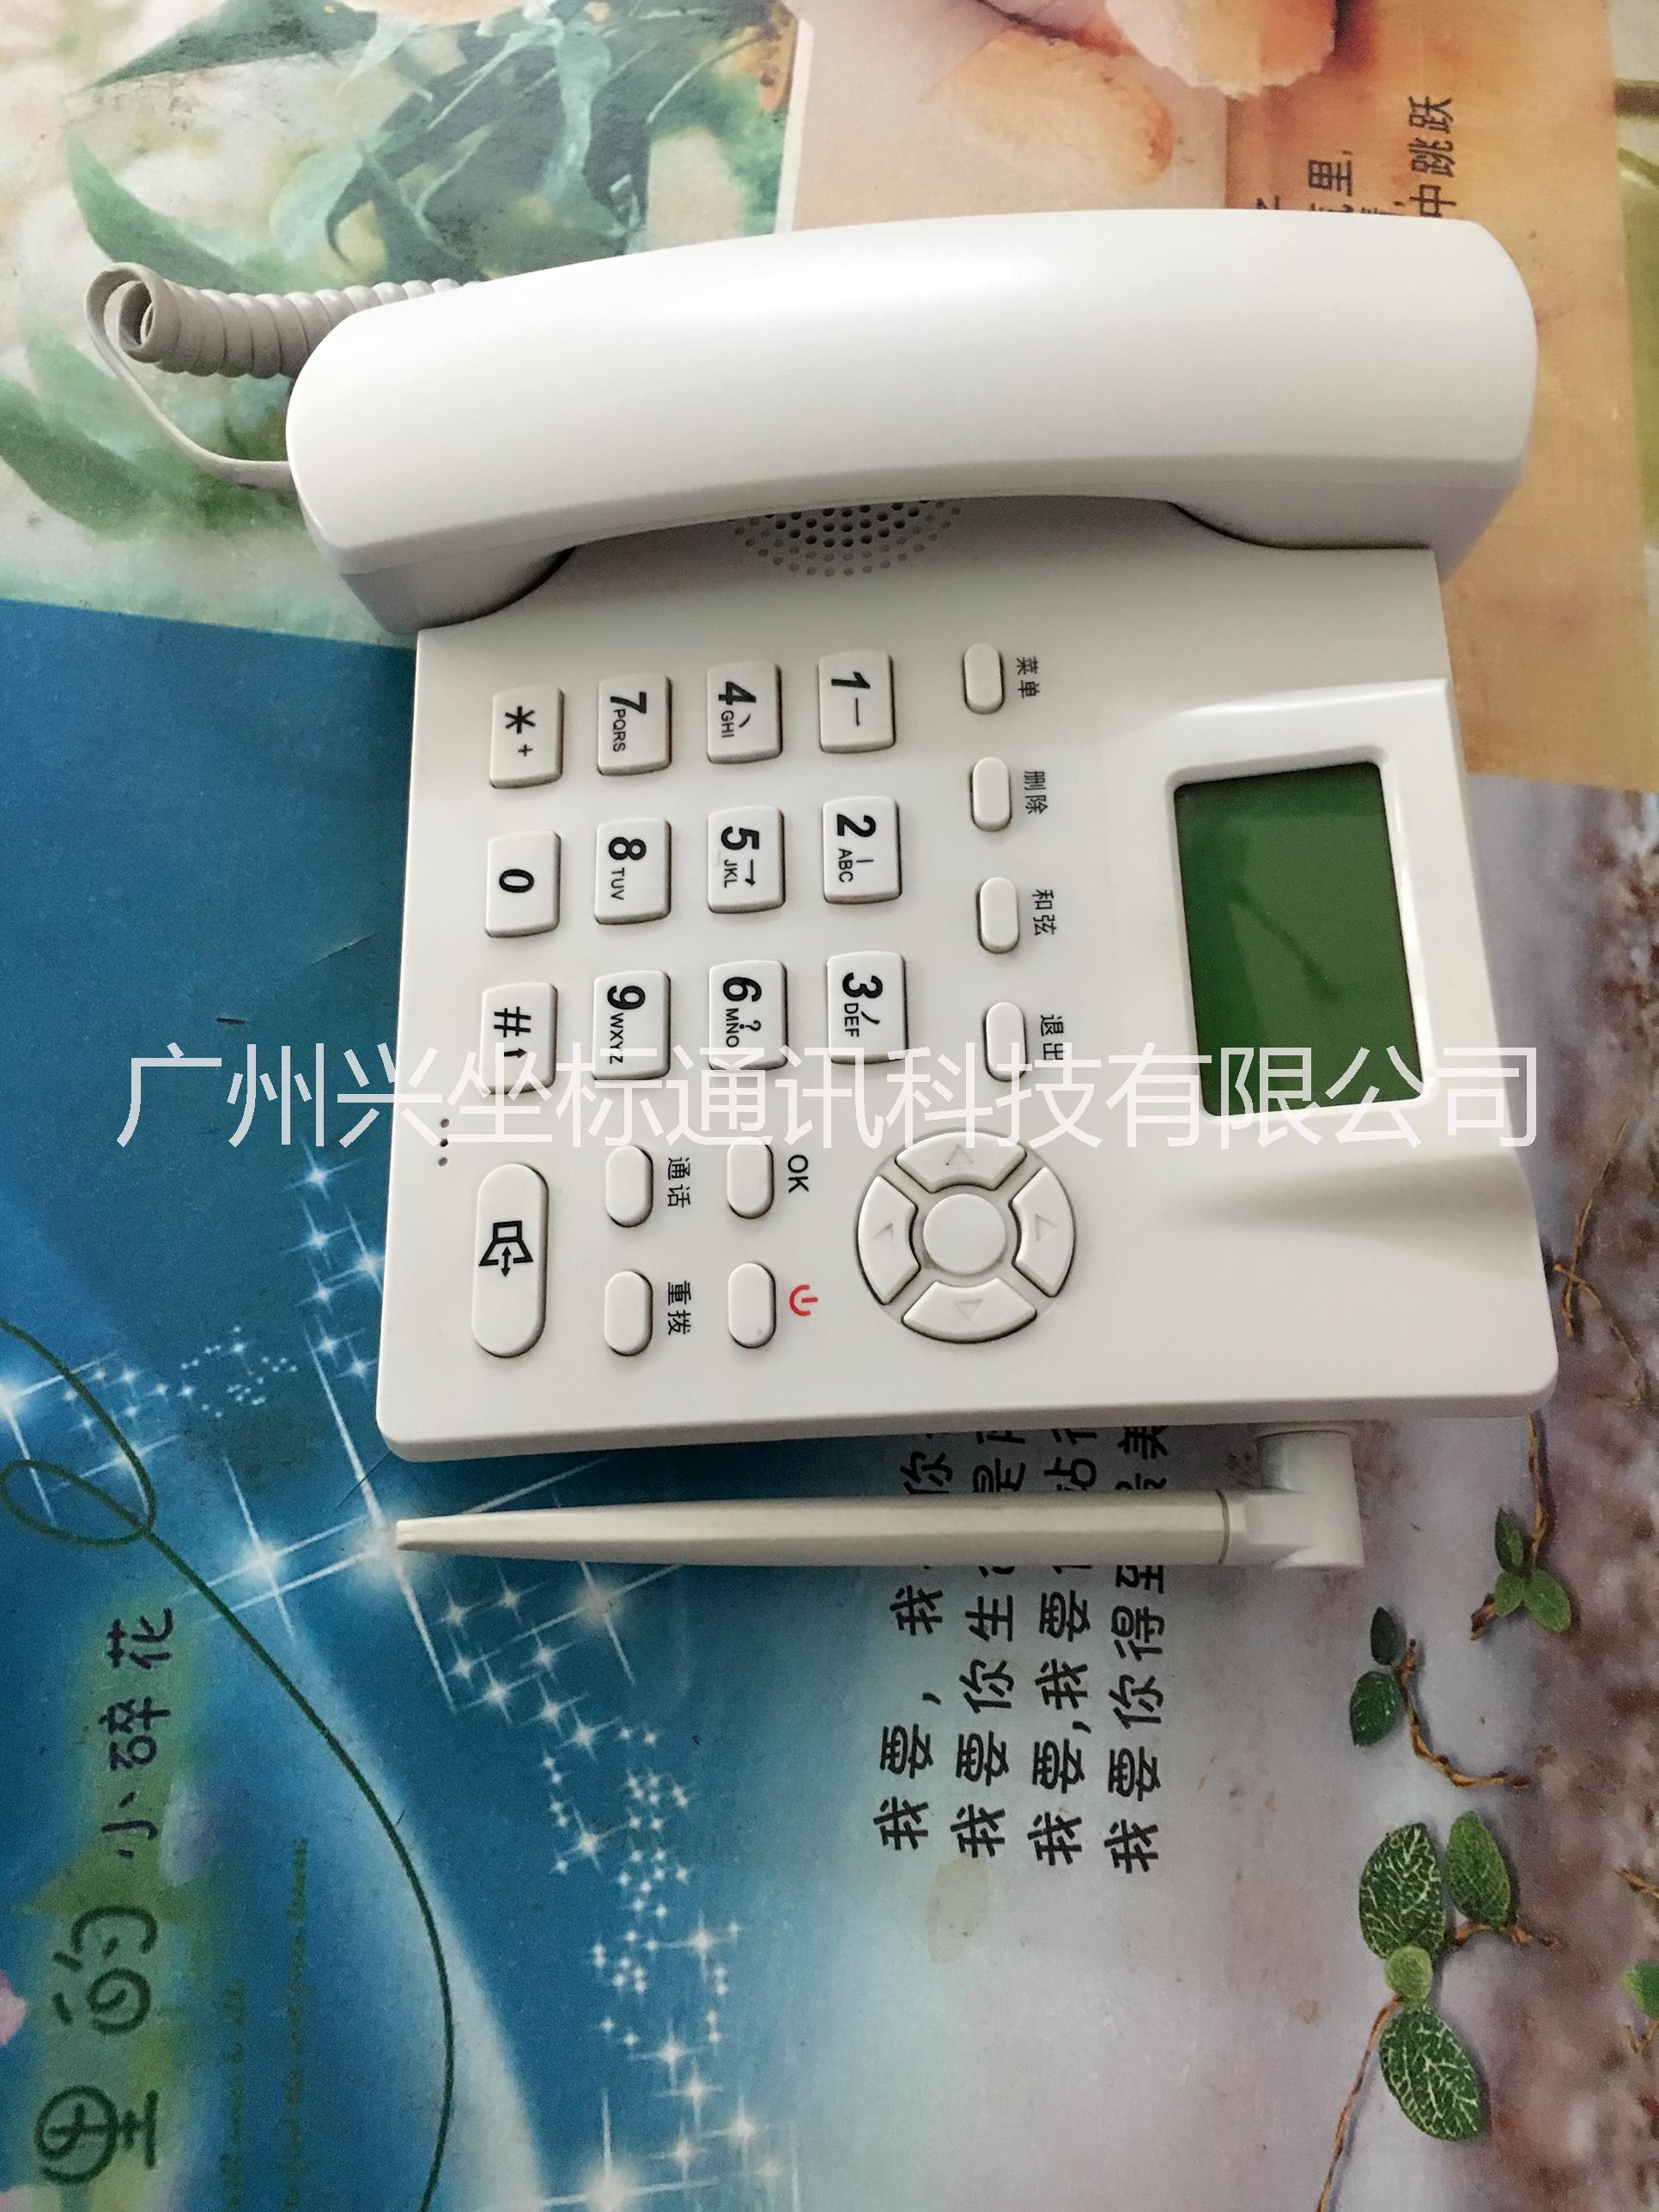 广州无线固话安装 广州无线固话安装电话18688855550